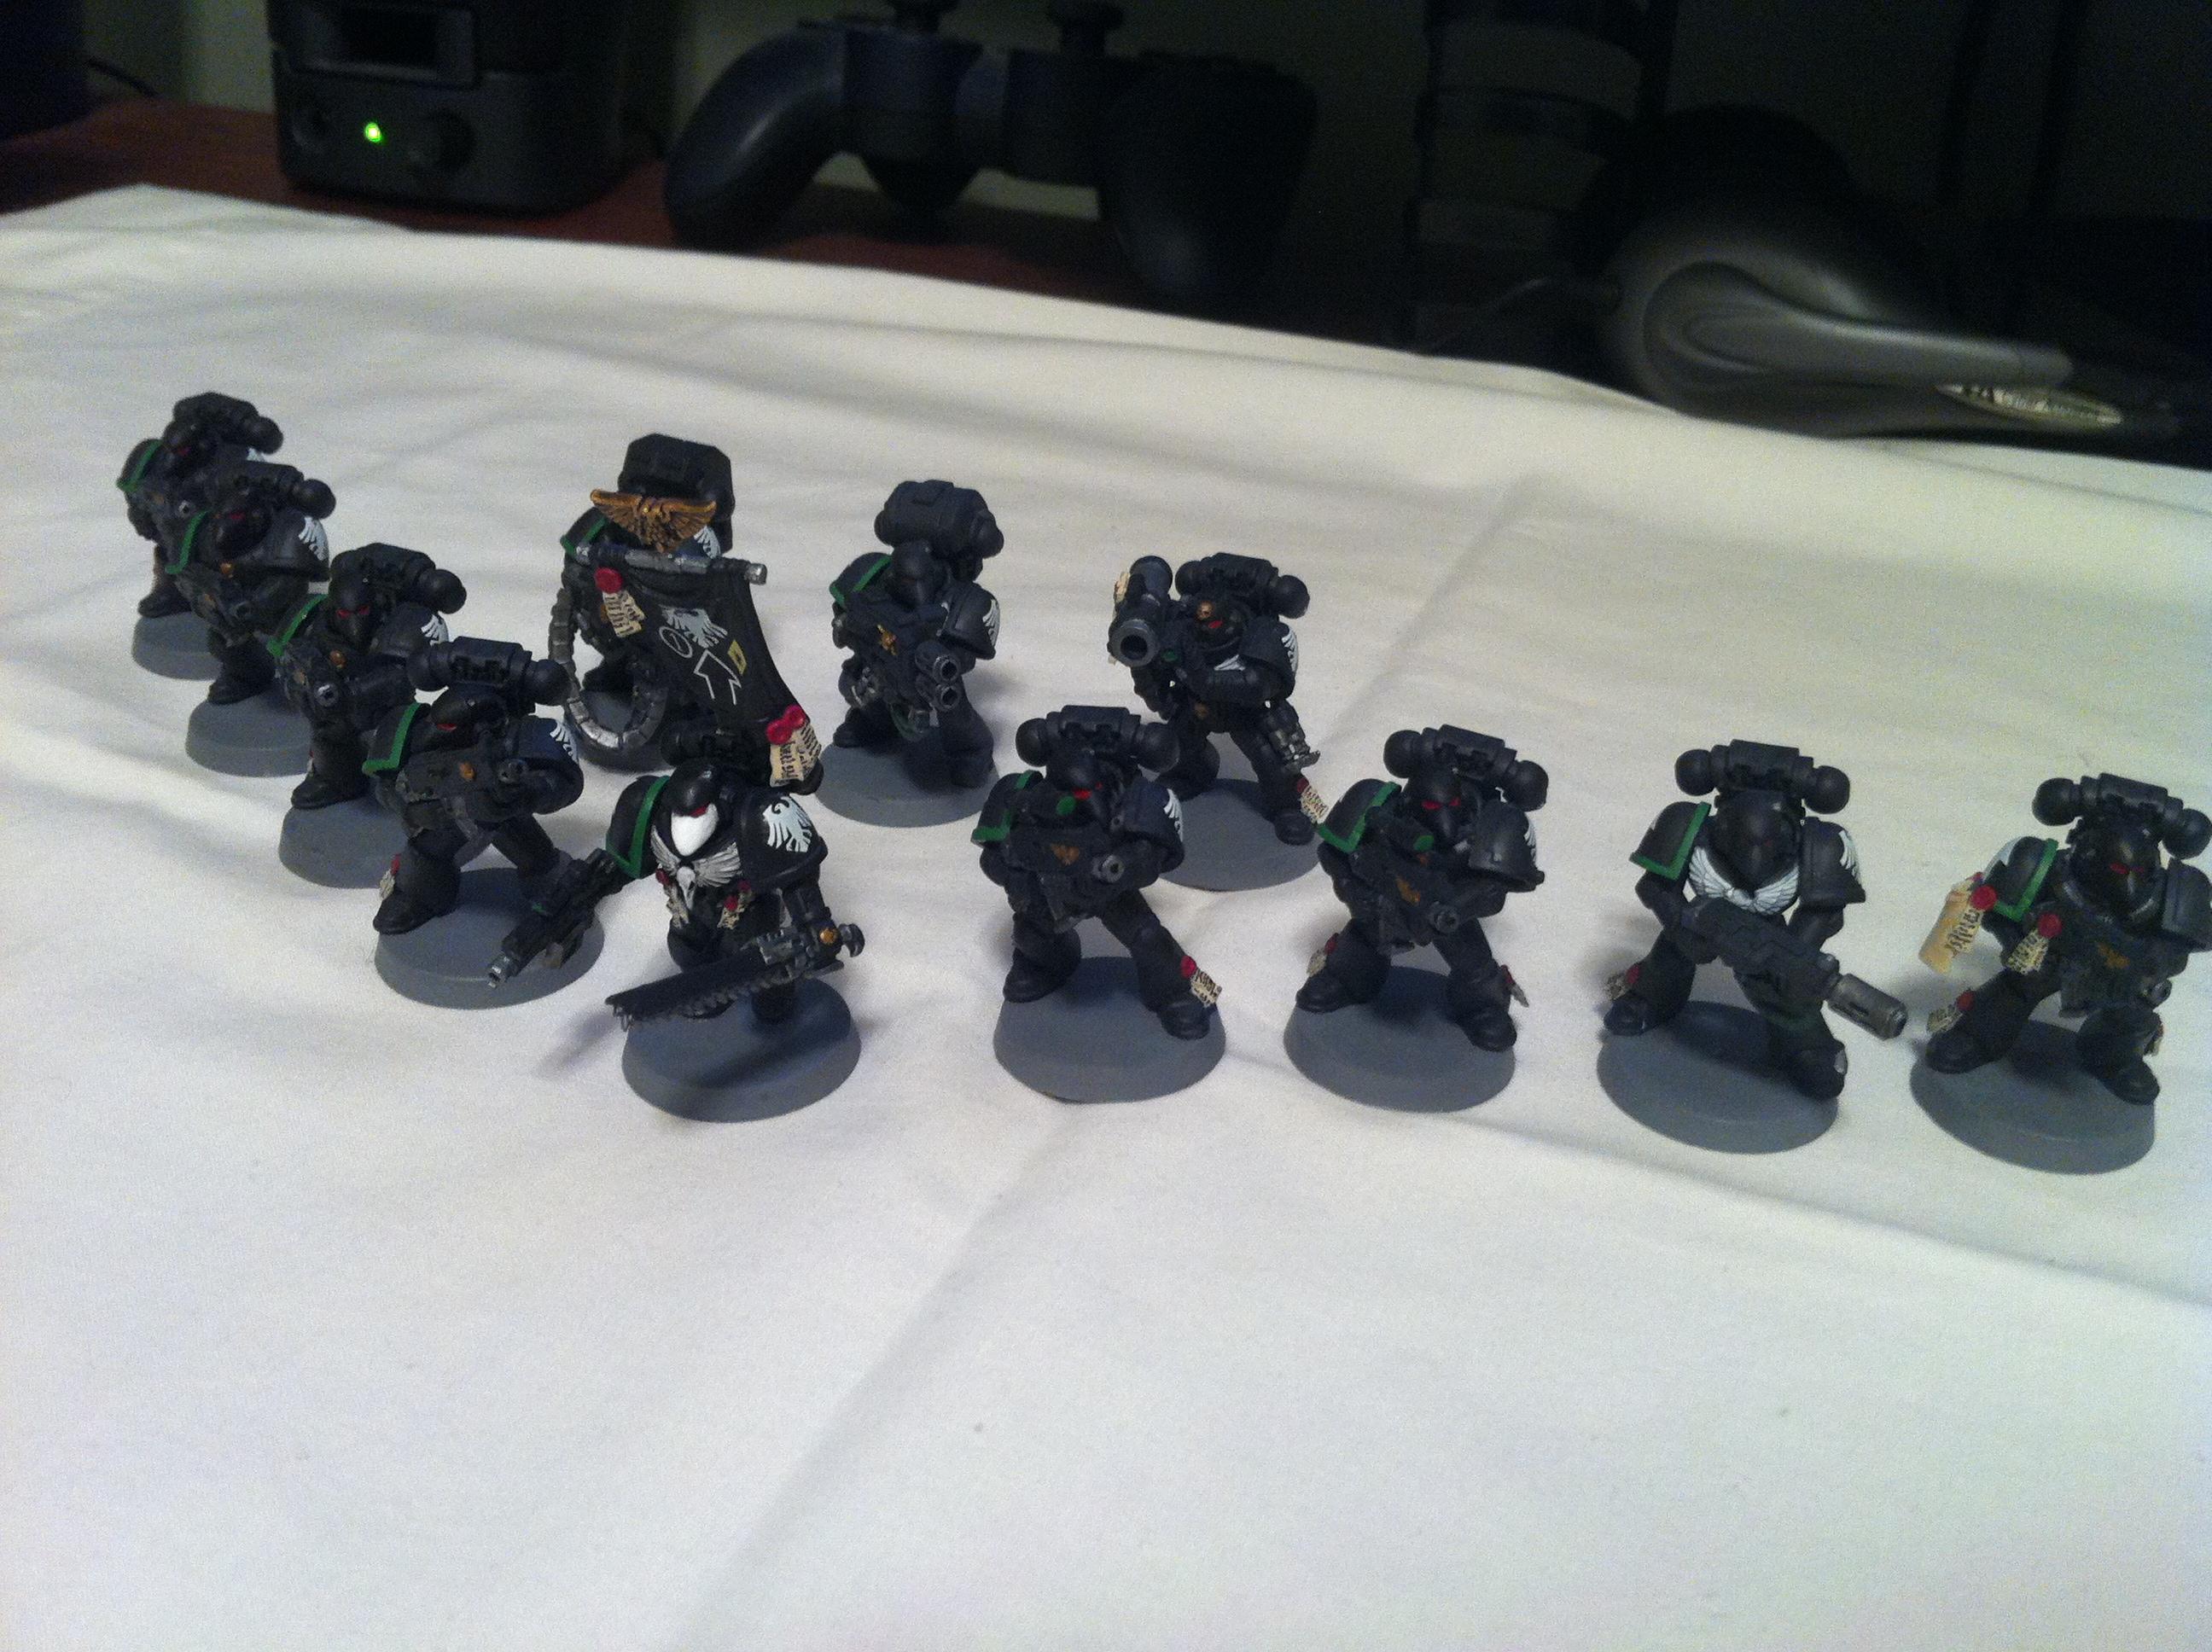 Beakie, Mk6, Mkvi, Raven Guard, Space Marines